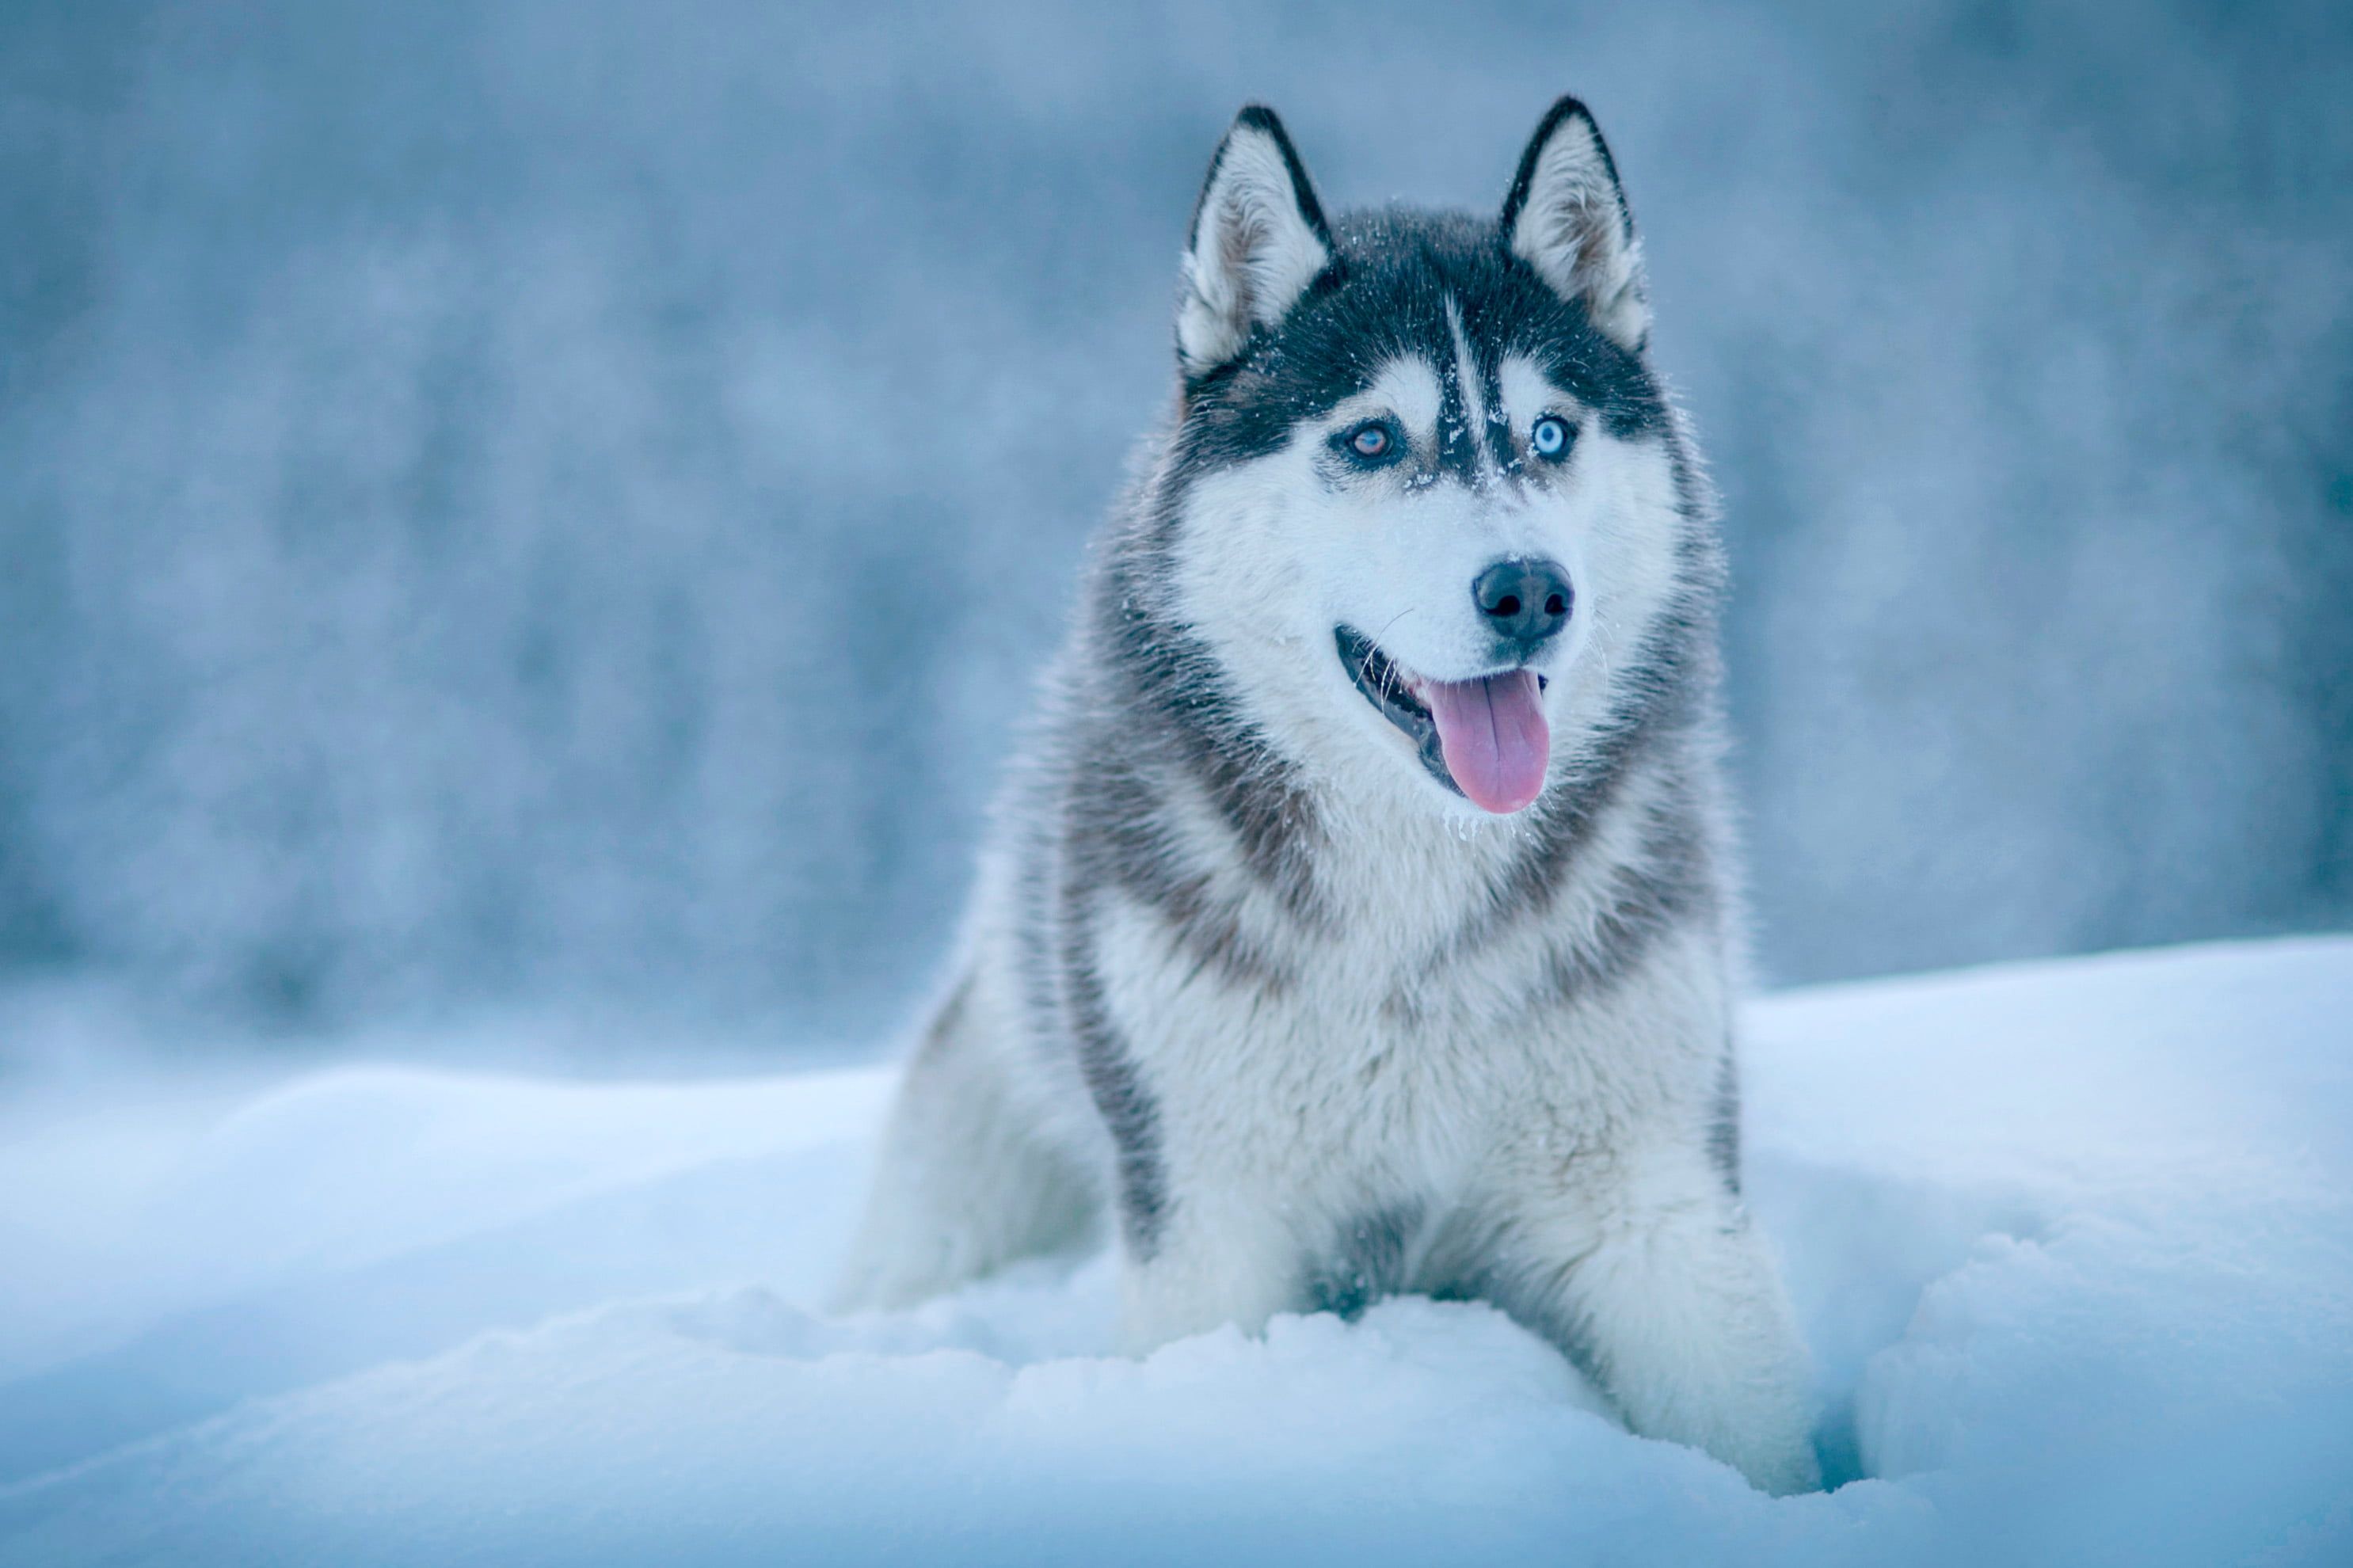 بکگراند سگ هاسکی سفید فوق العاده زیبا با چشمان درشت و قشنگ